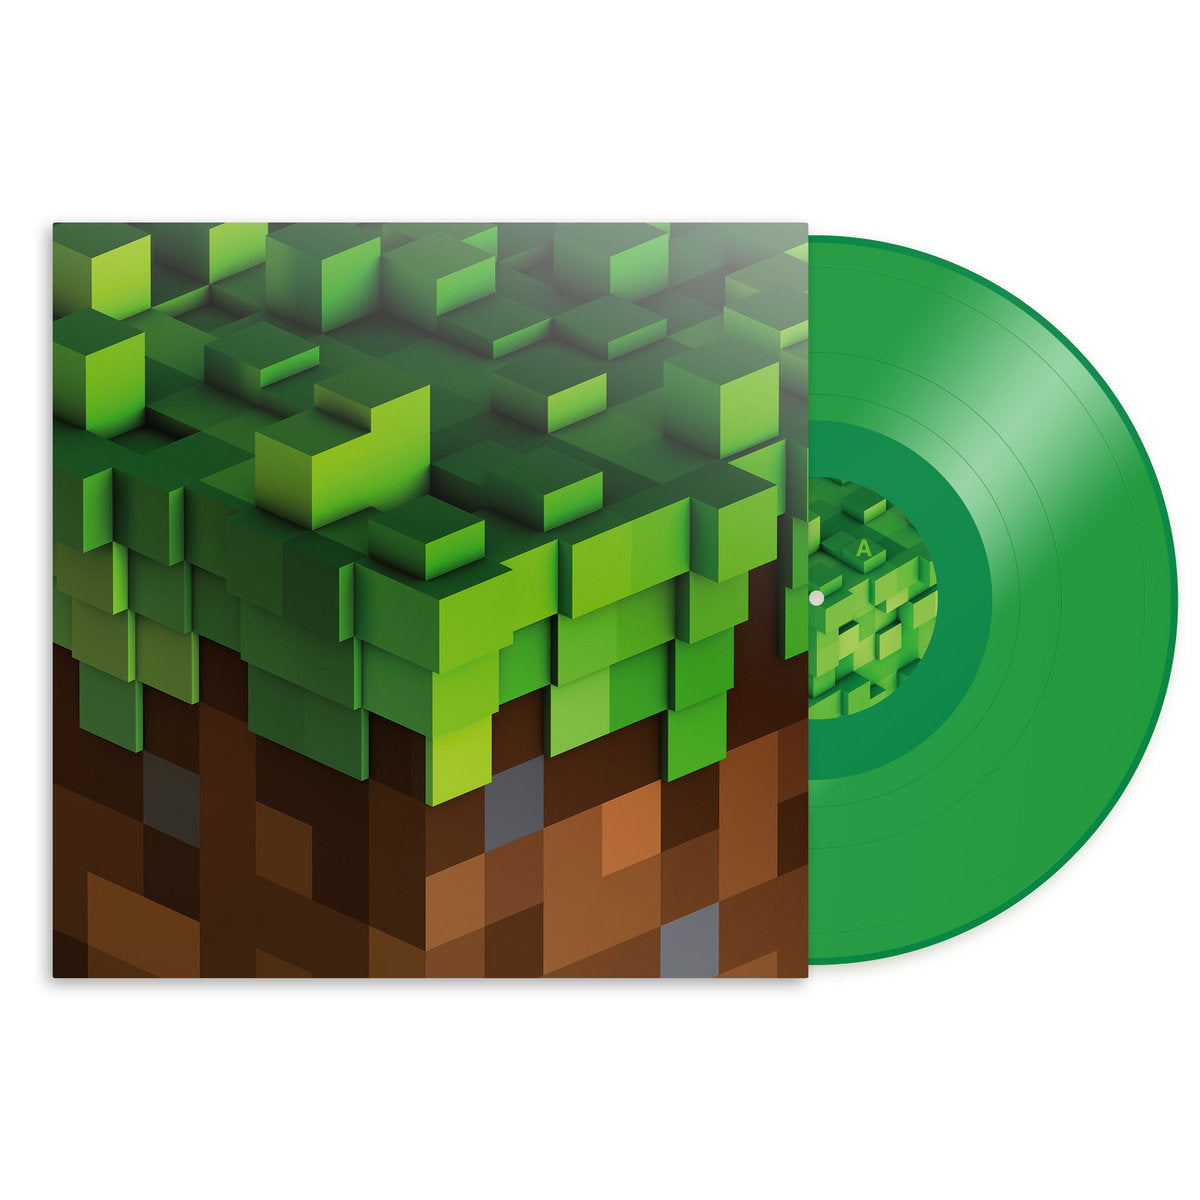 C418 - Minecraft Volume Alpha: Limited Edition Green Vinyl LP.